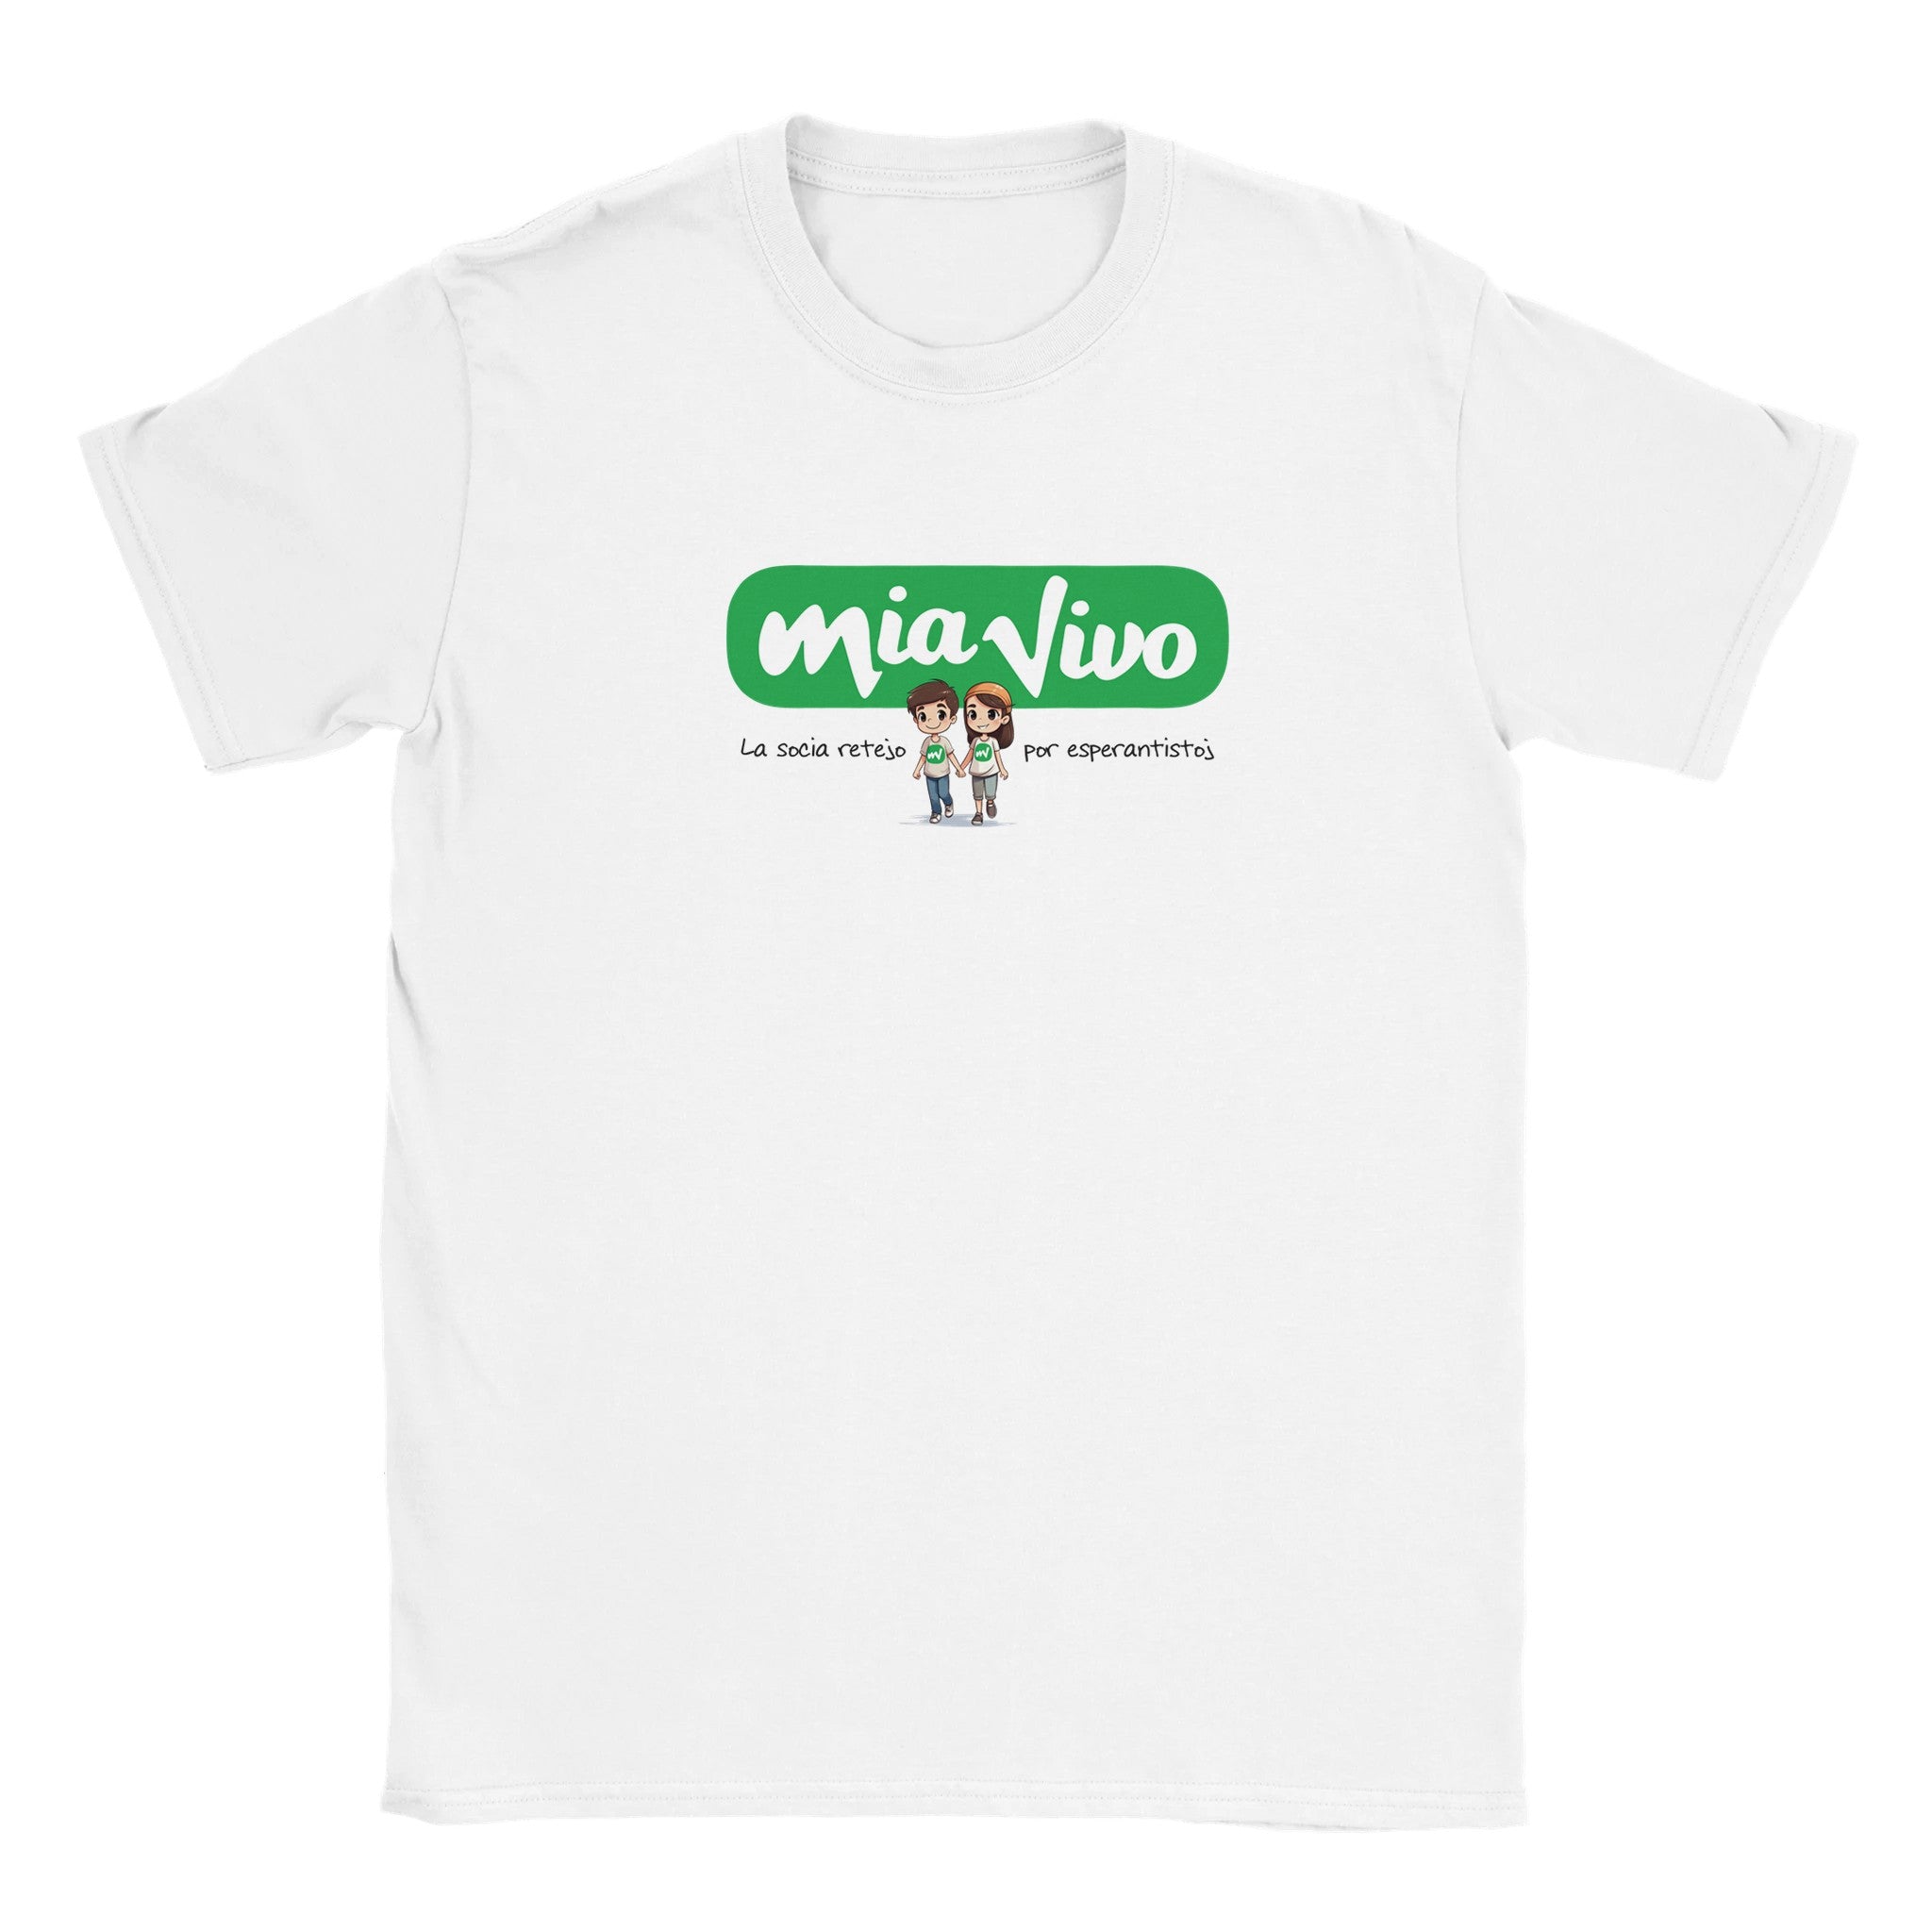 Mia Vivo Youth T-shirt